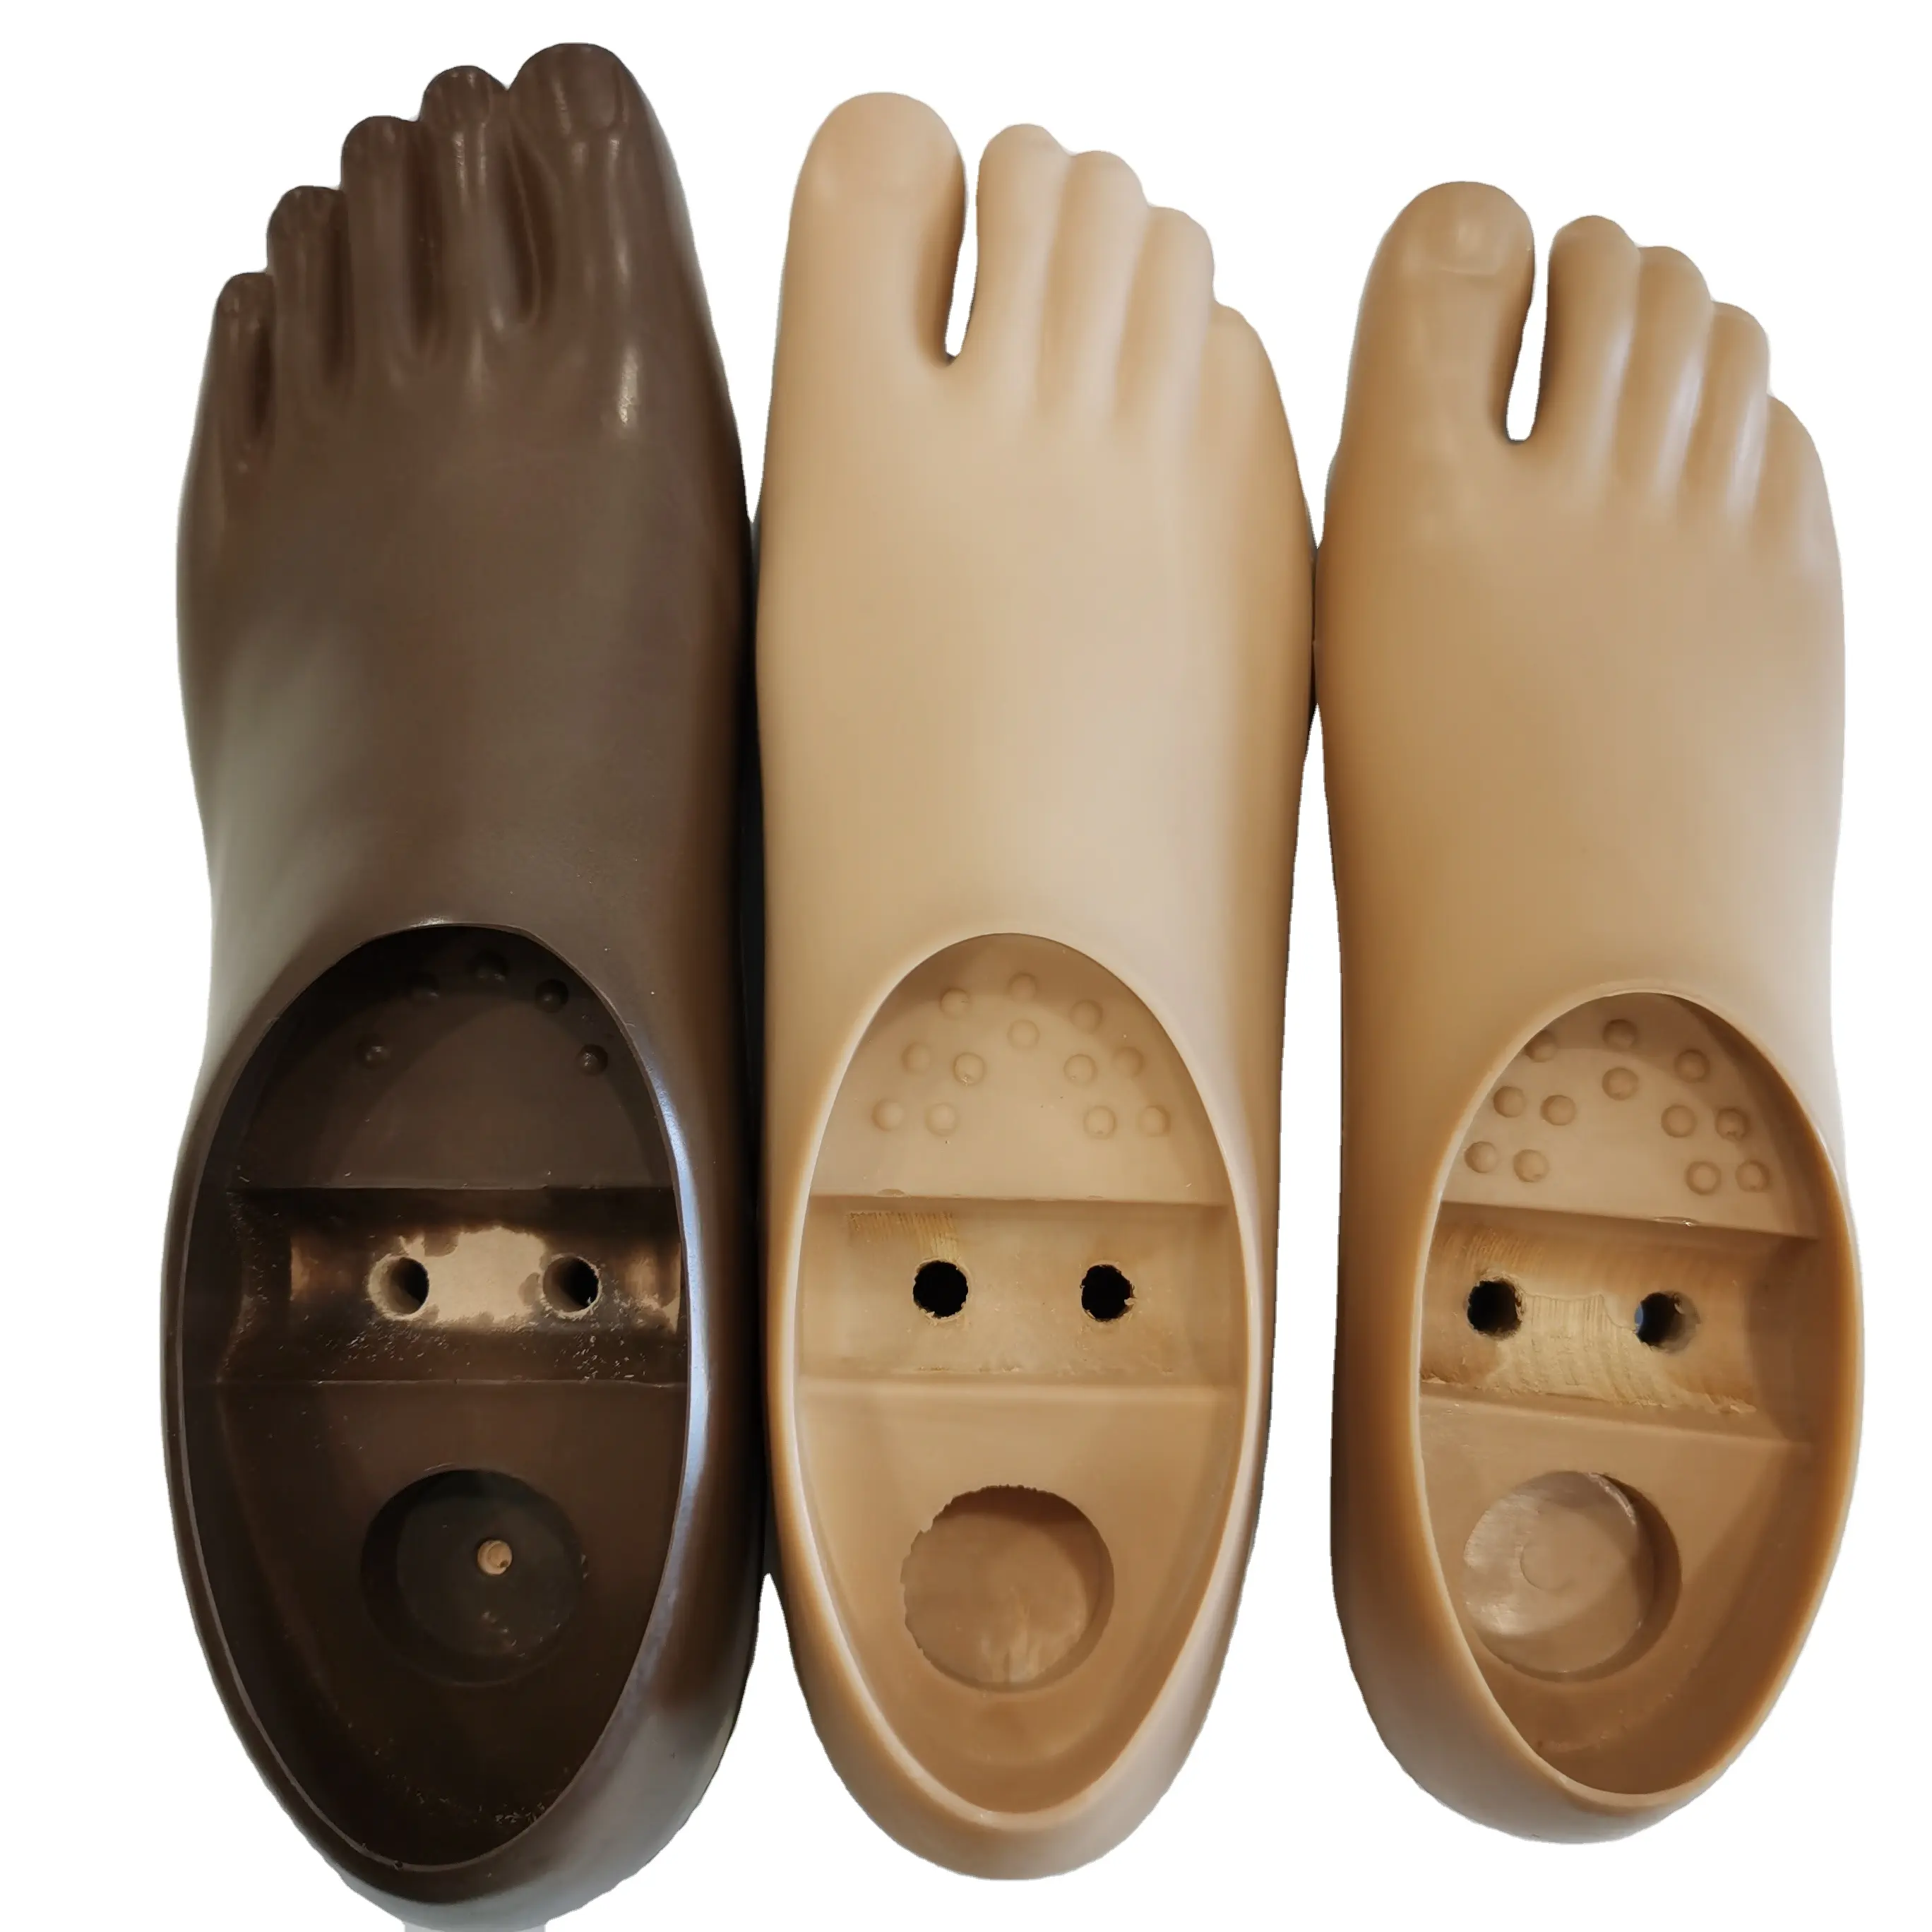 Protez bacak için yapay uzuvlar ayak poliüretan çift delik ayak